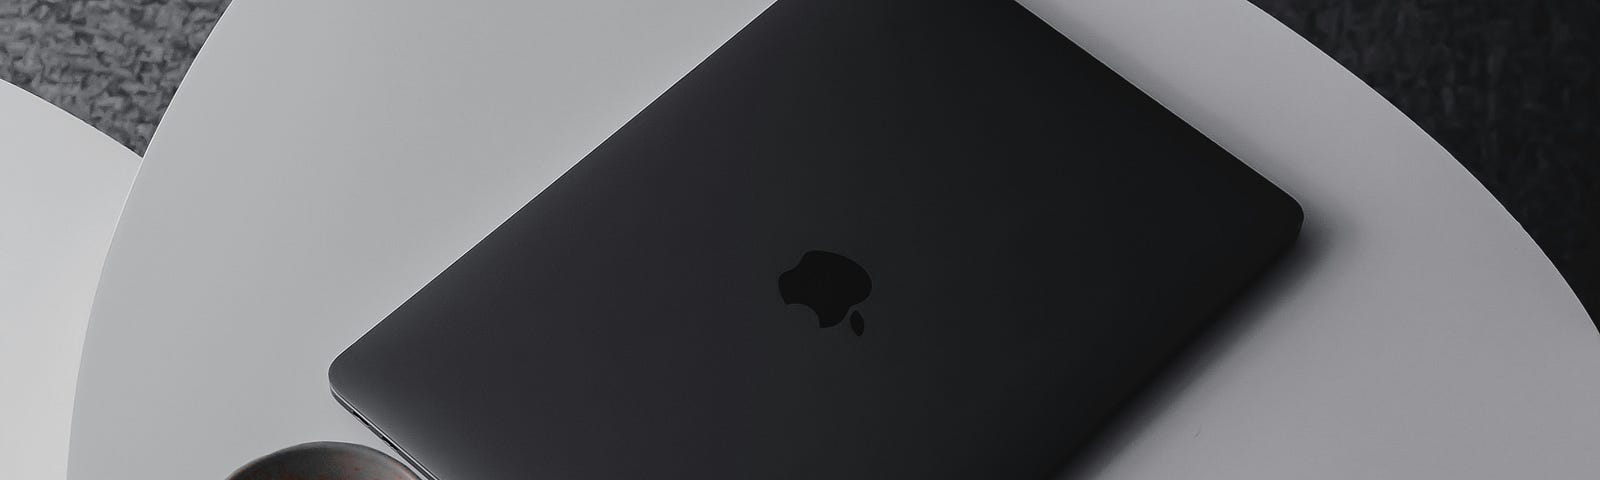 A space black Macbook Pro